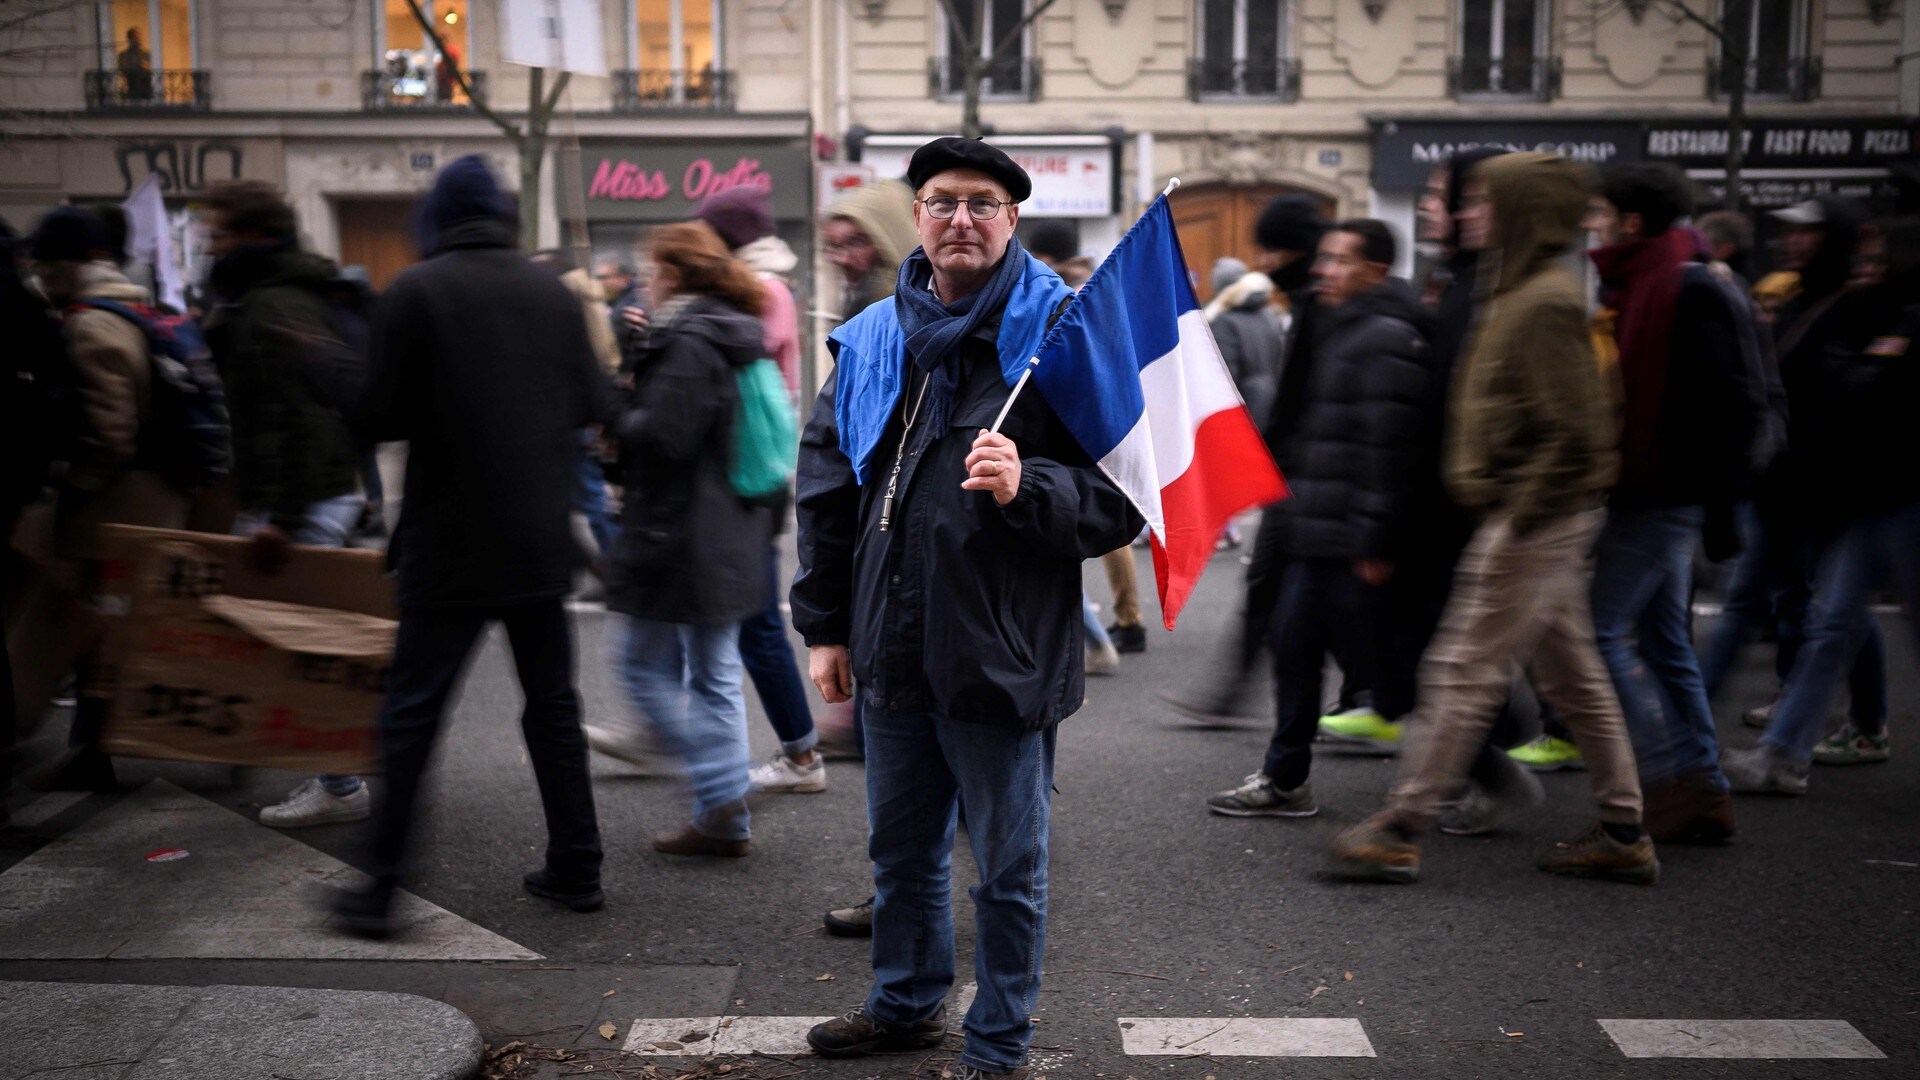 Sjå video frå demonstrasjon i Paris